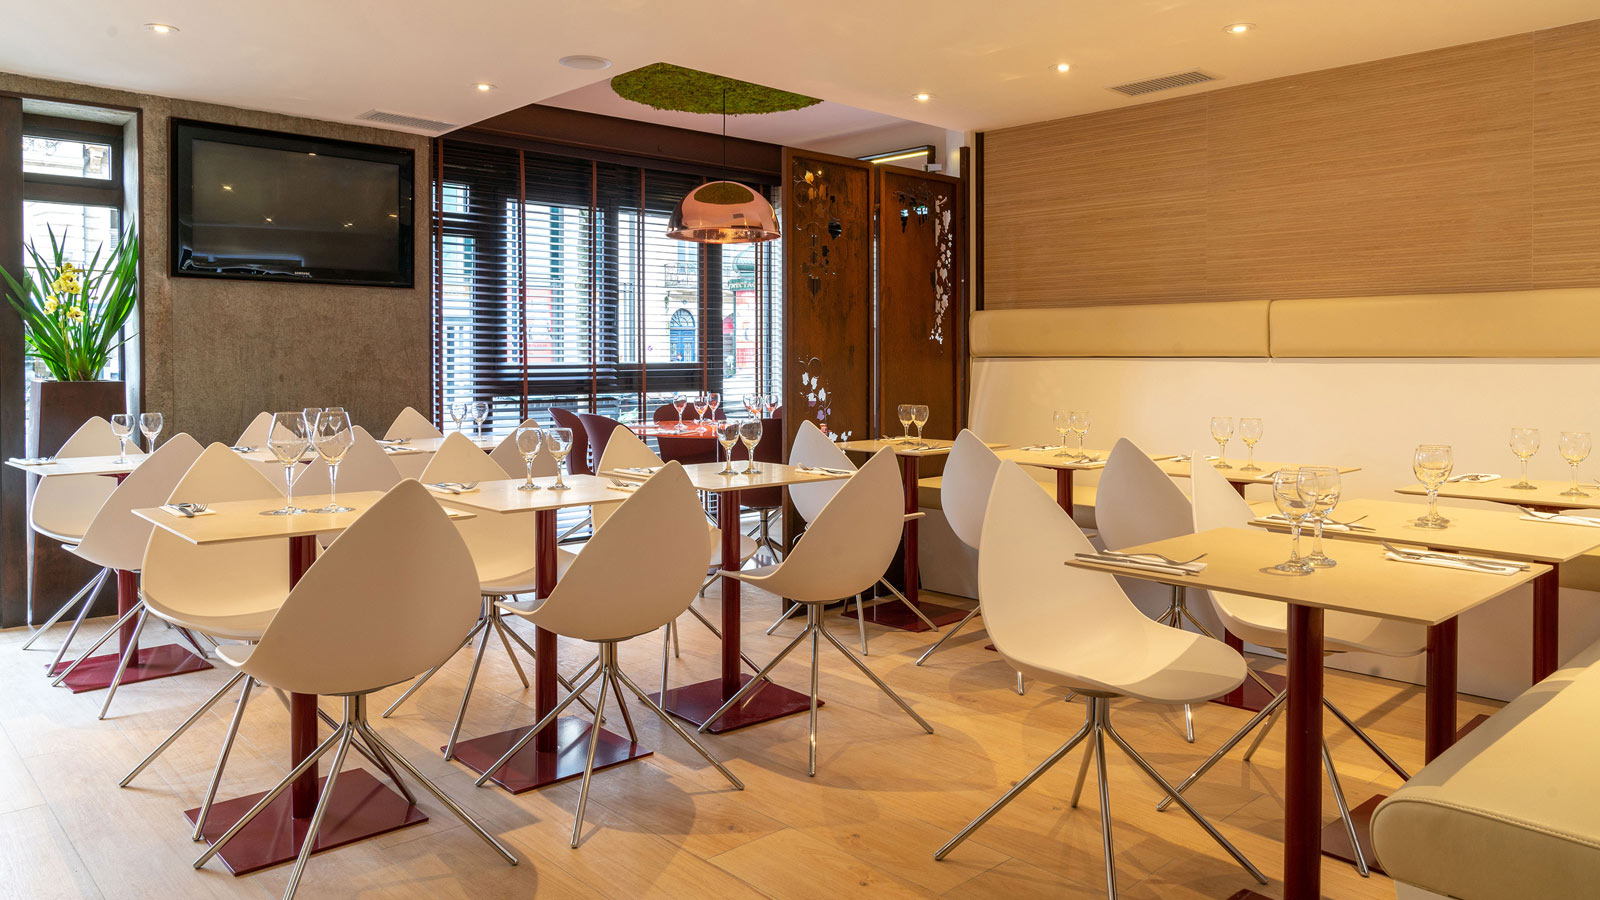 PORCELANOSA Grupo Projects: Il ristorante Le Grand Café di Bordeaux amplia il suo menù con i materiali di PORCELANOSA Grupo